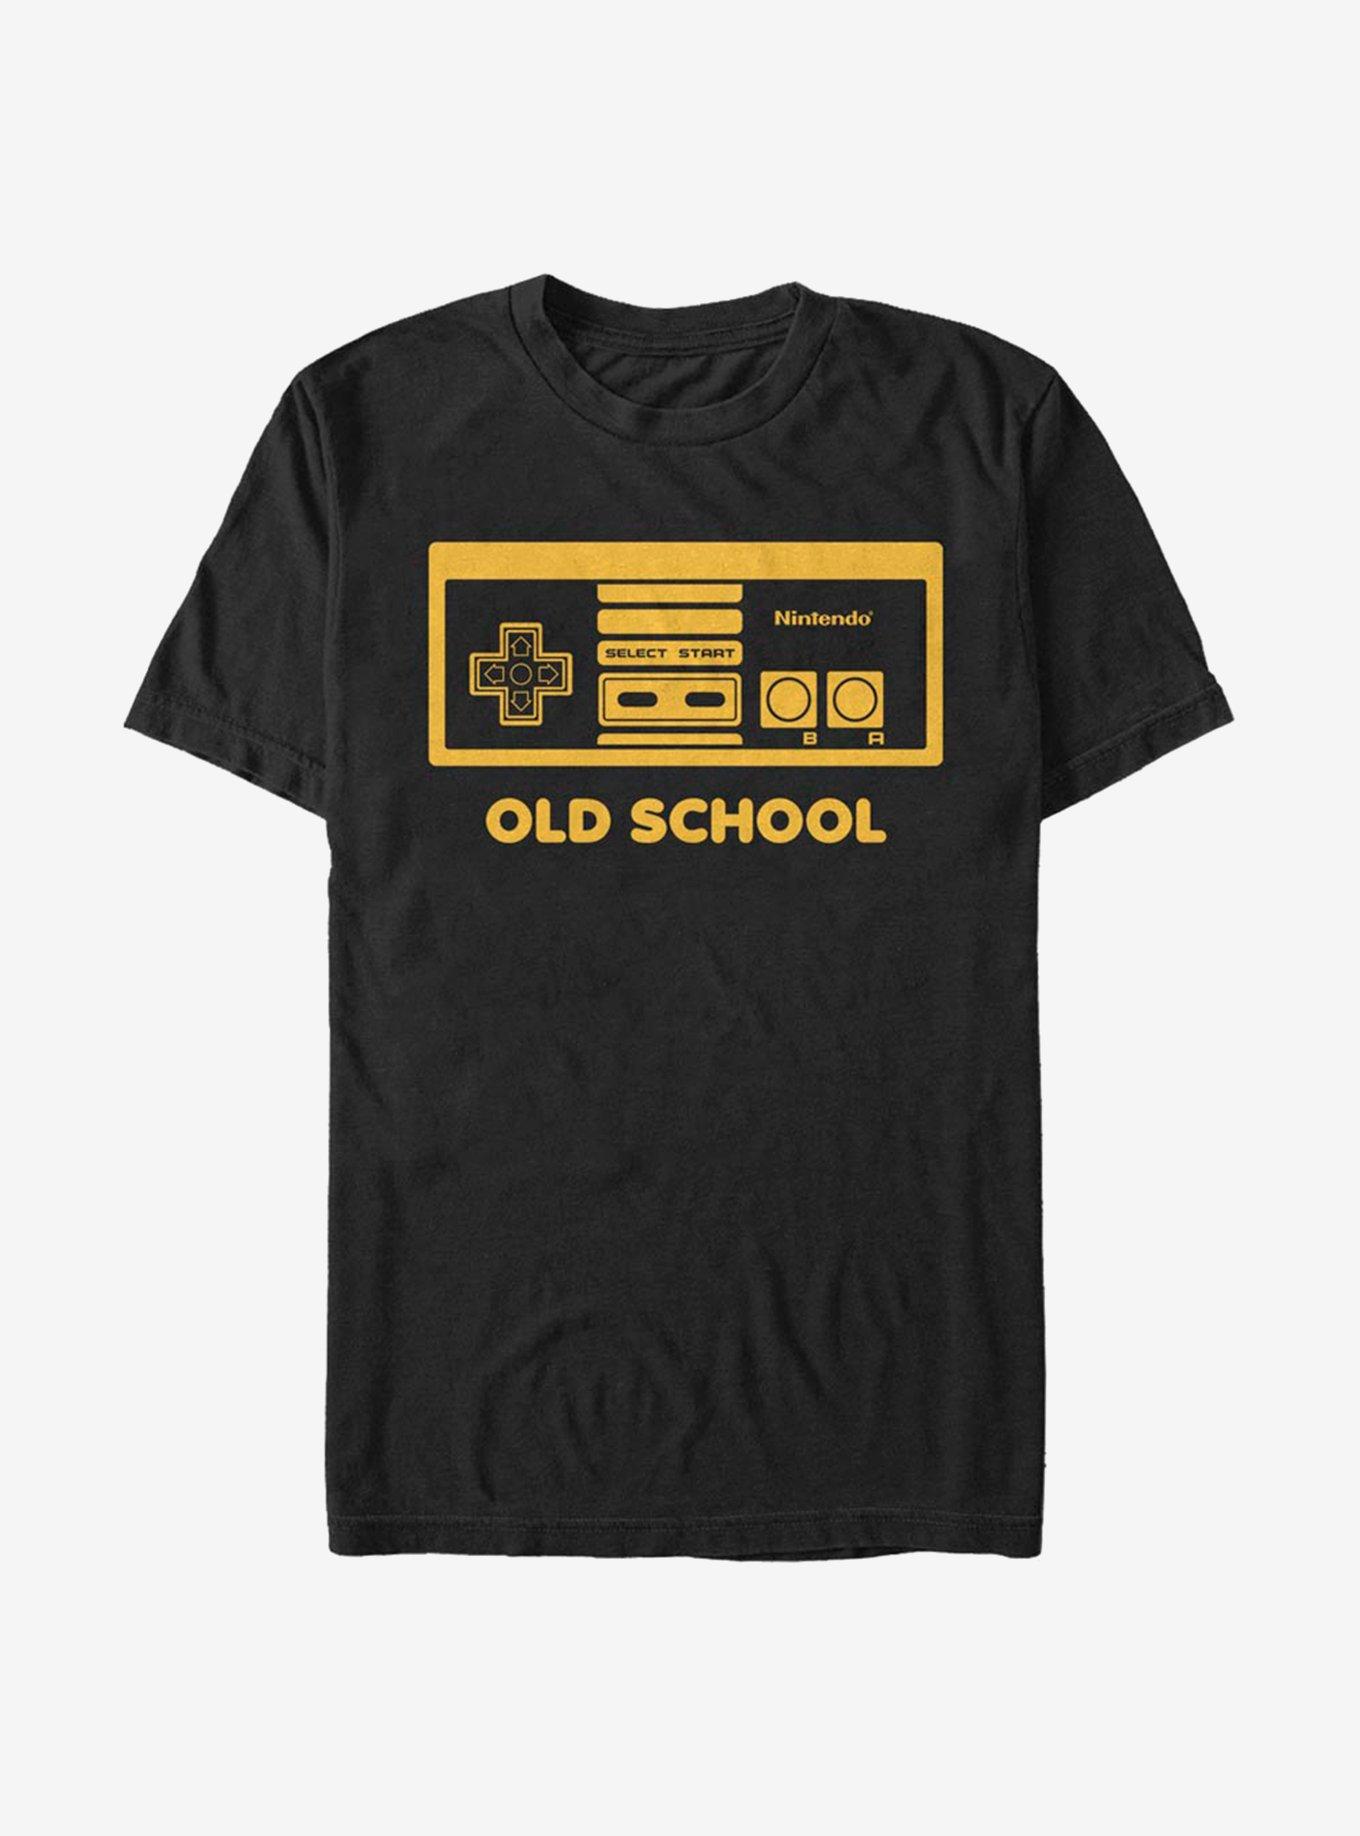 Nintendo NES Old School T-Shirt